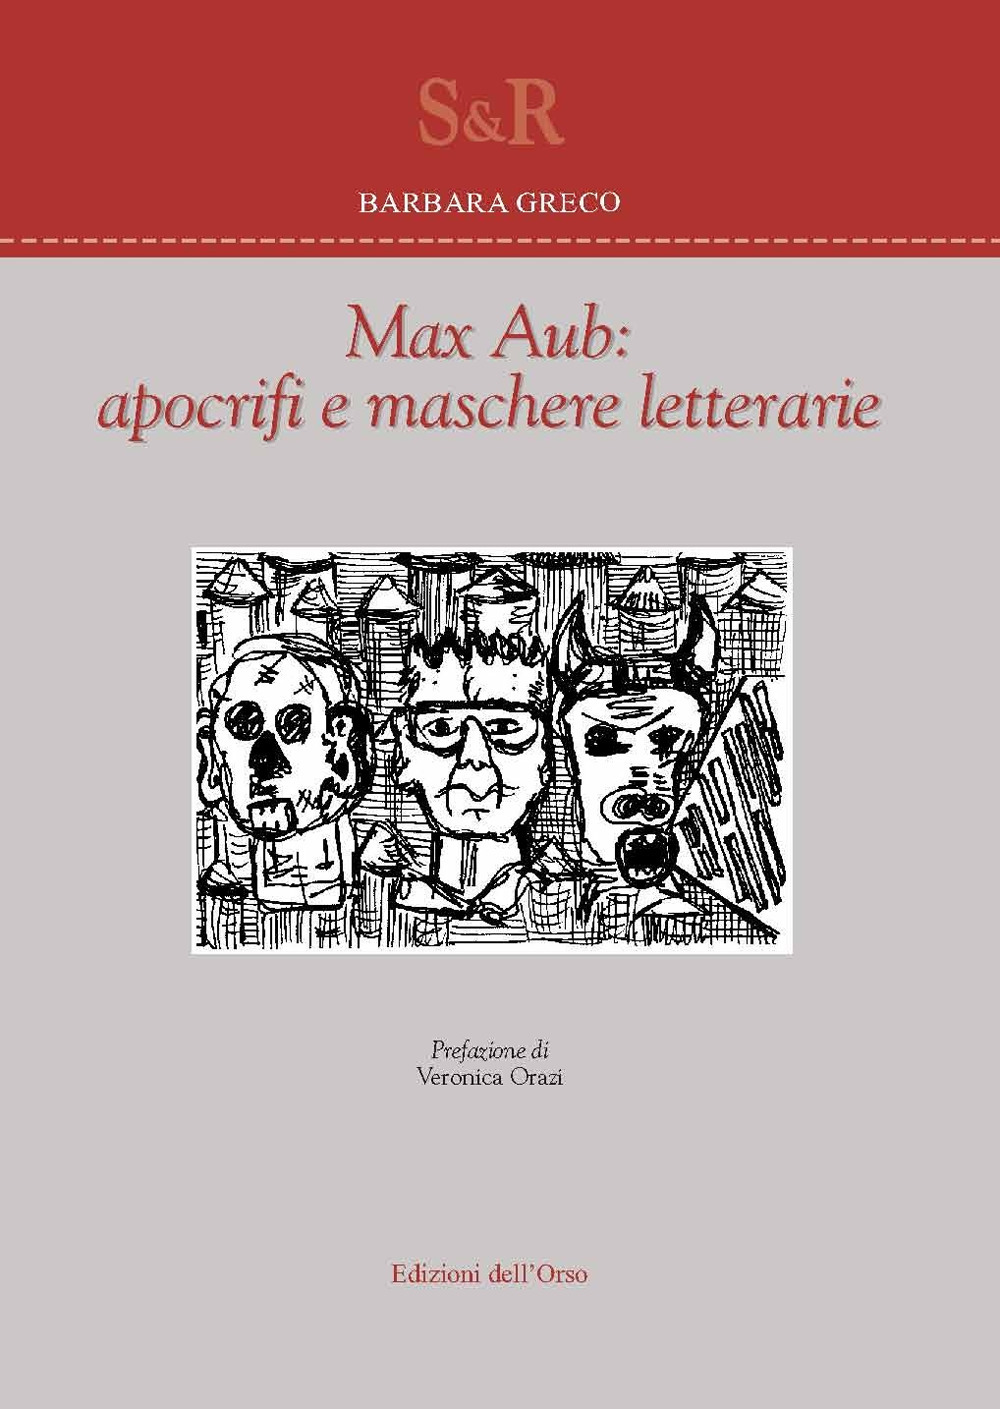 Libri Barbara Greco - Max Aub: Apocrifi E Maschere Letterarie NUOVO SIGILLATO, EDIZIONE DEL 01/01/2018 SUBITO DISPONIBILE